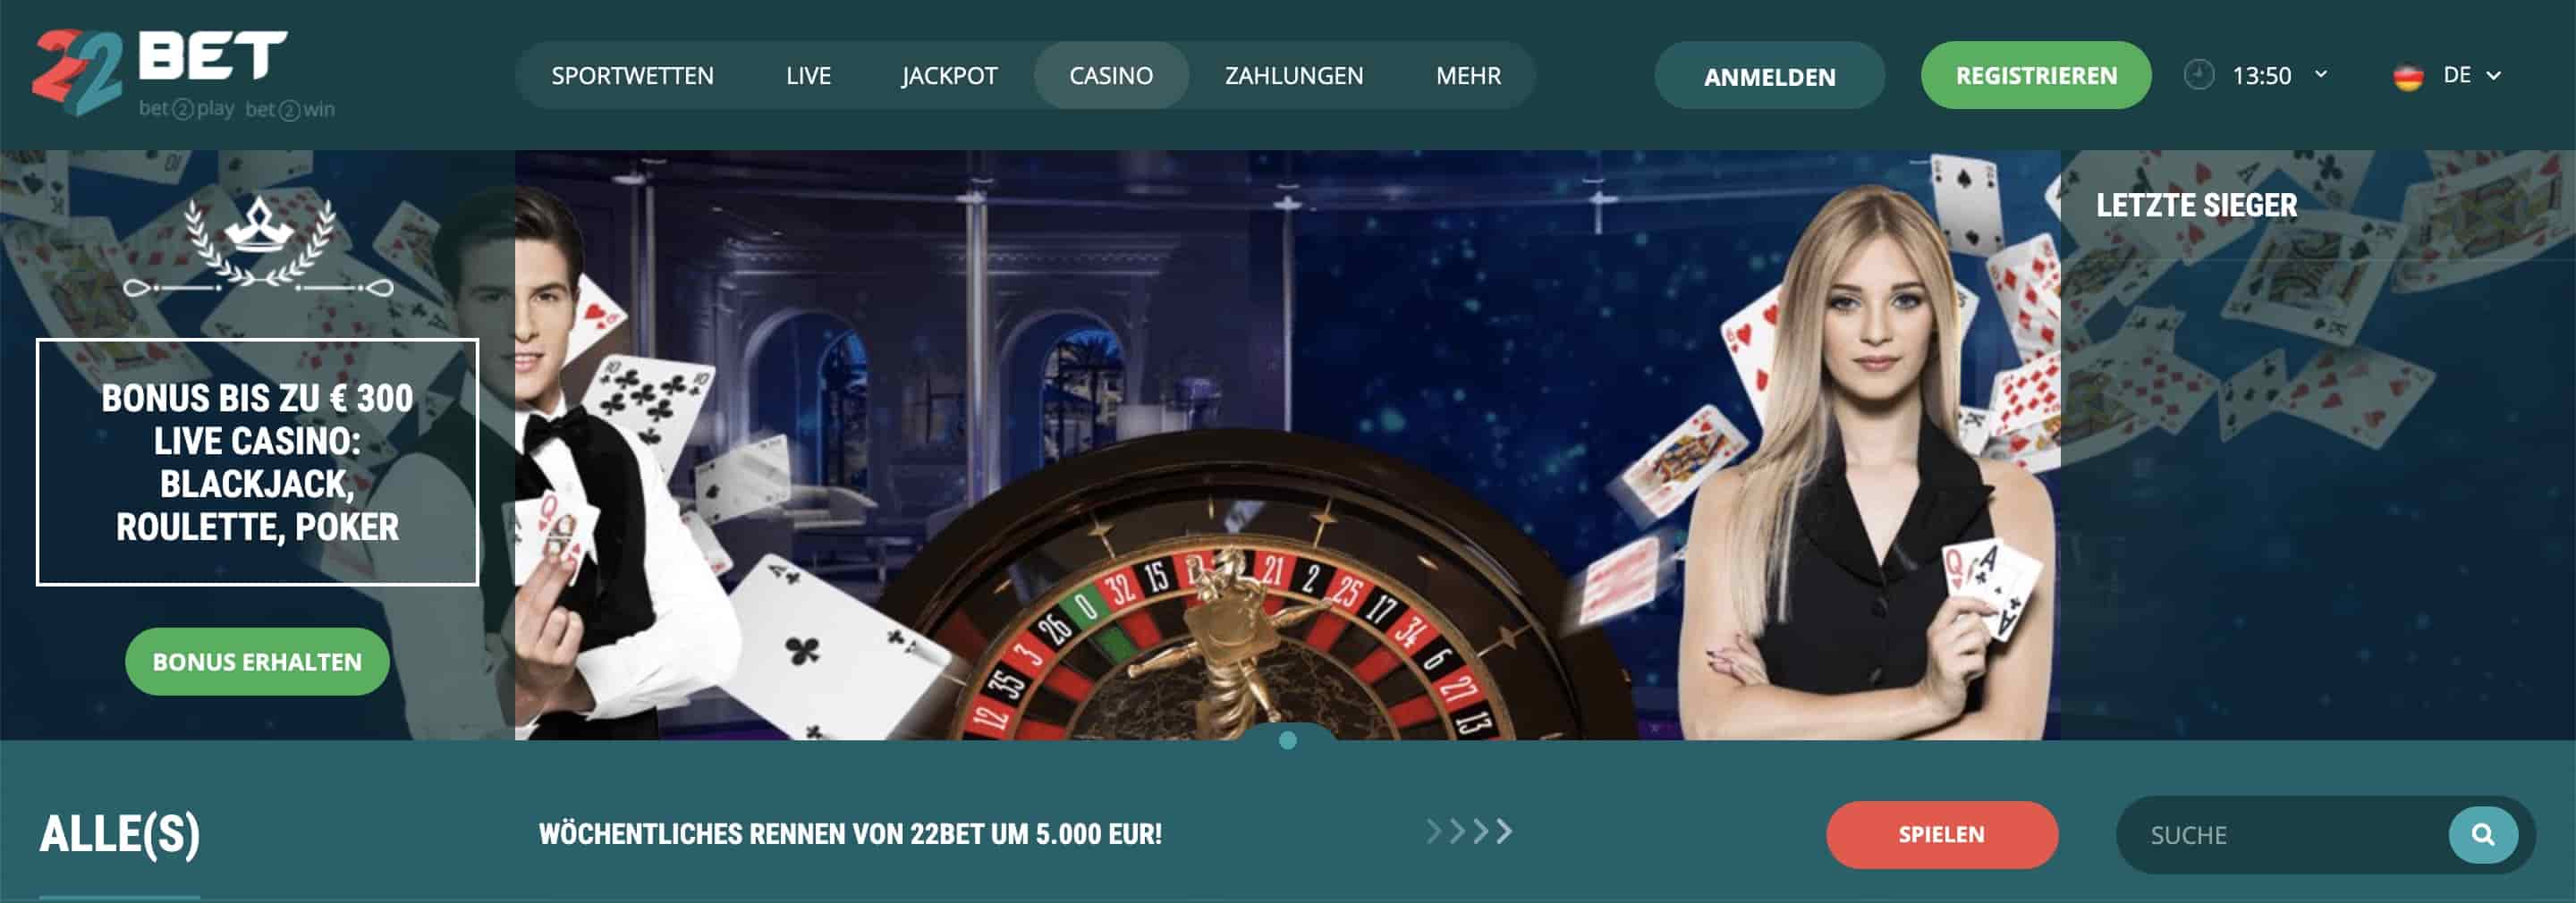 Endlich wird das Geheimnis von besten online casino österreich gelüftet